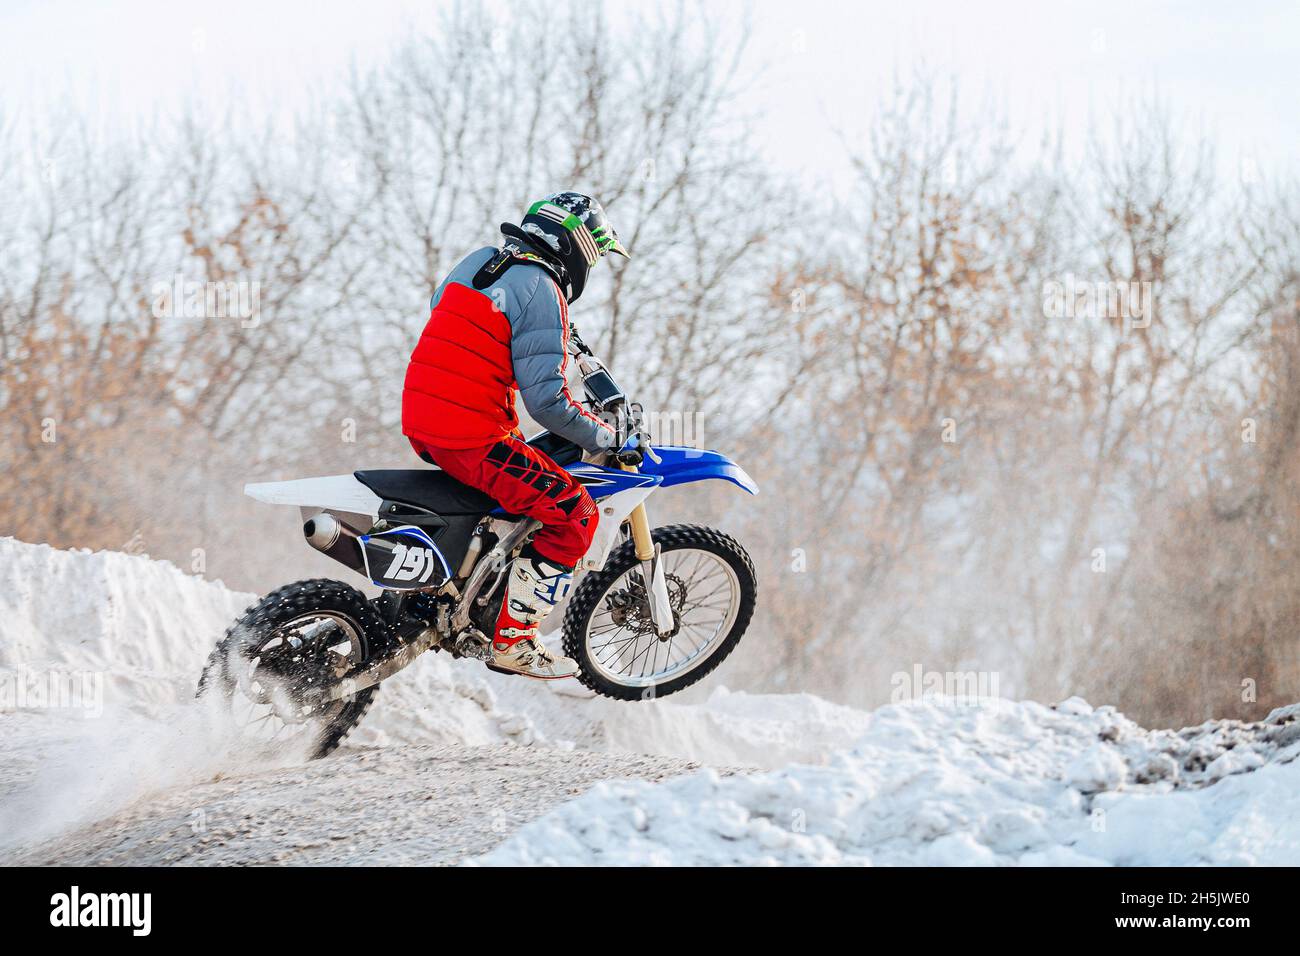 motocross d'hiver, pilote d'une moto sportive Banque D'Images